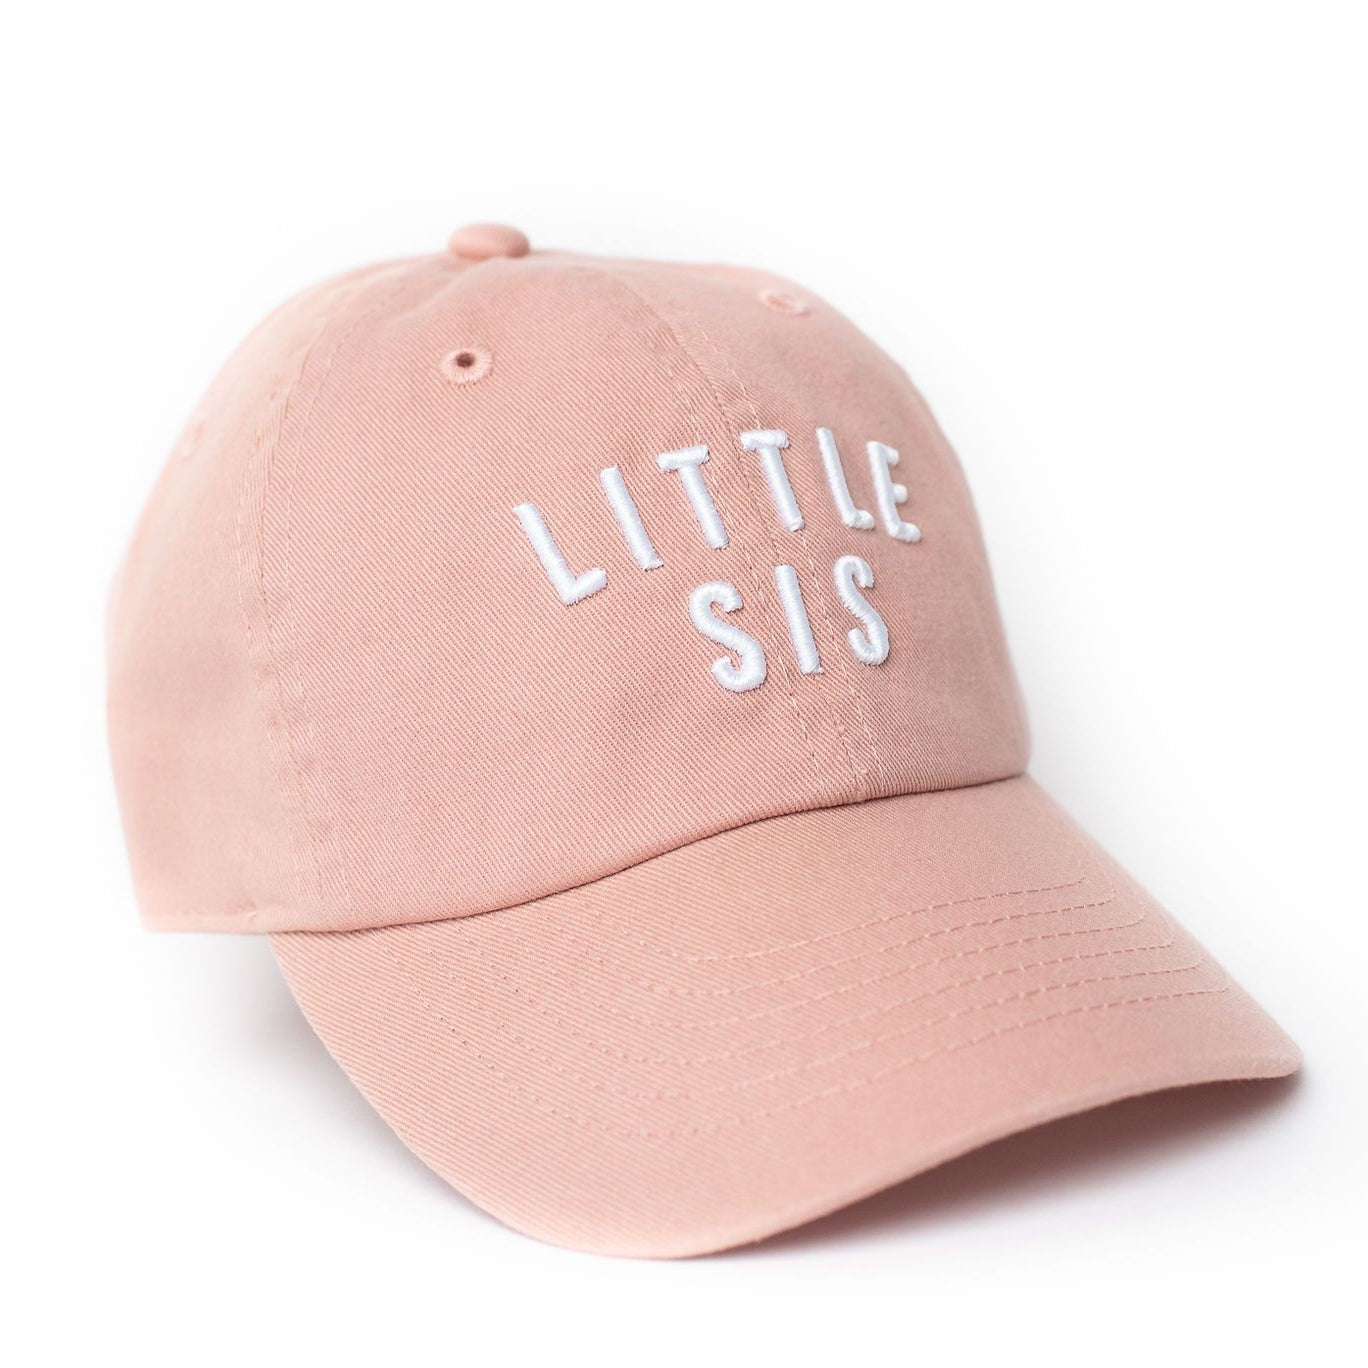 little sis hat in dusty rose